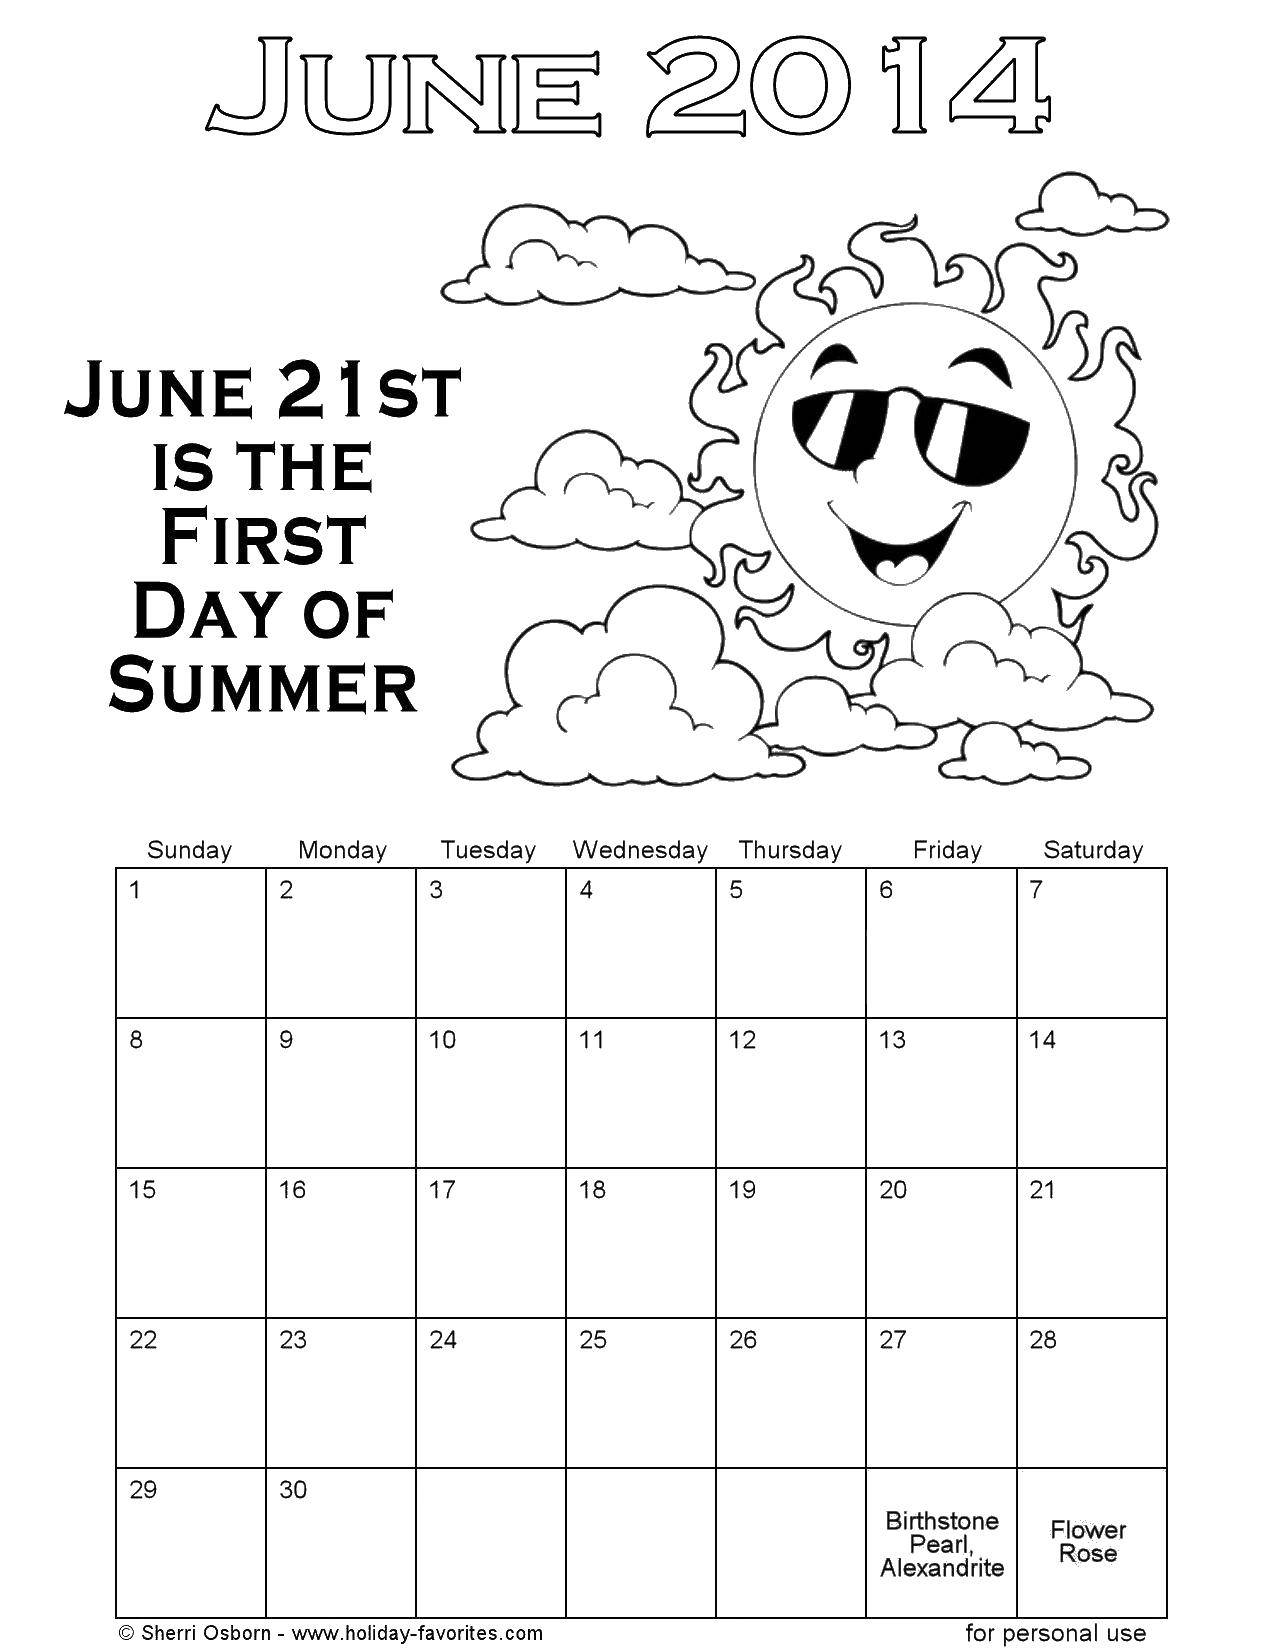 Название: Раскраска Летний календарь. Категория: Летние развлечения. Теги: календарь.